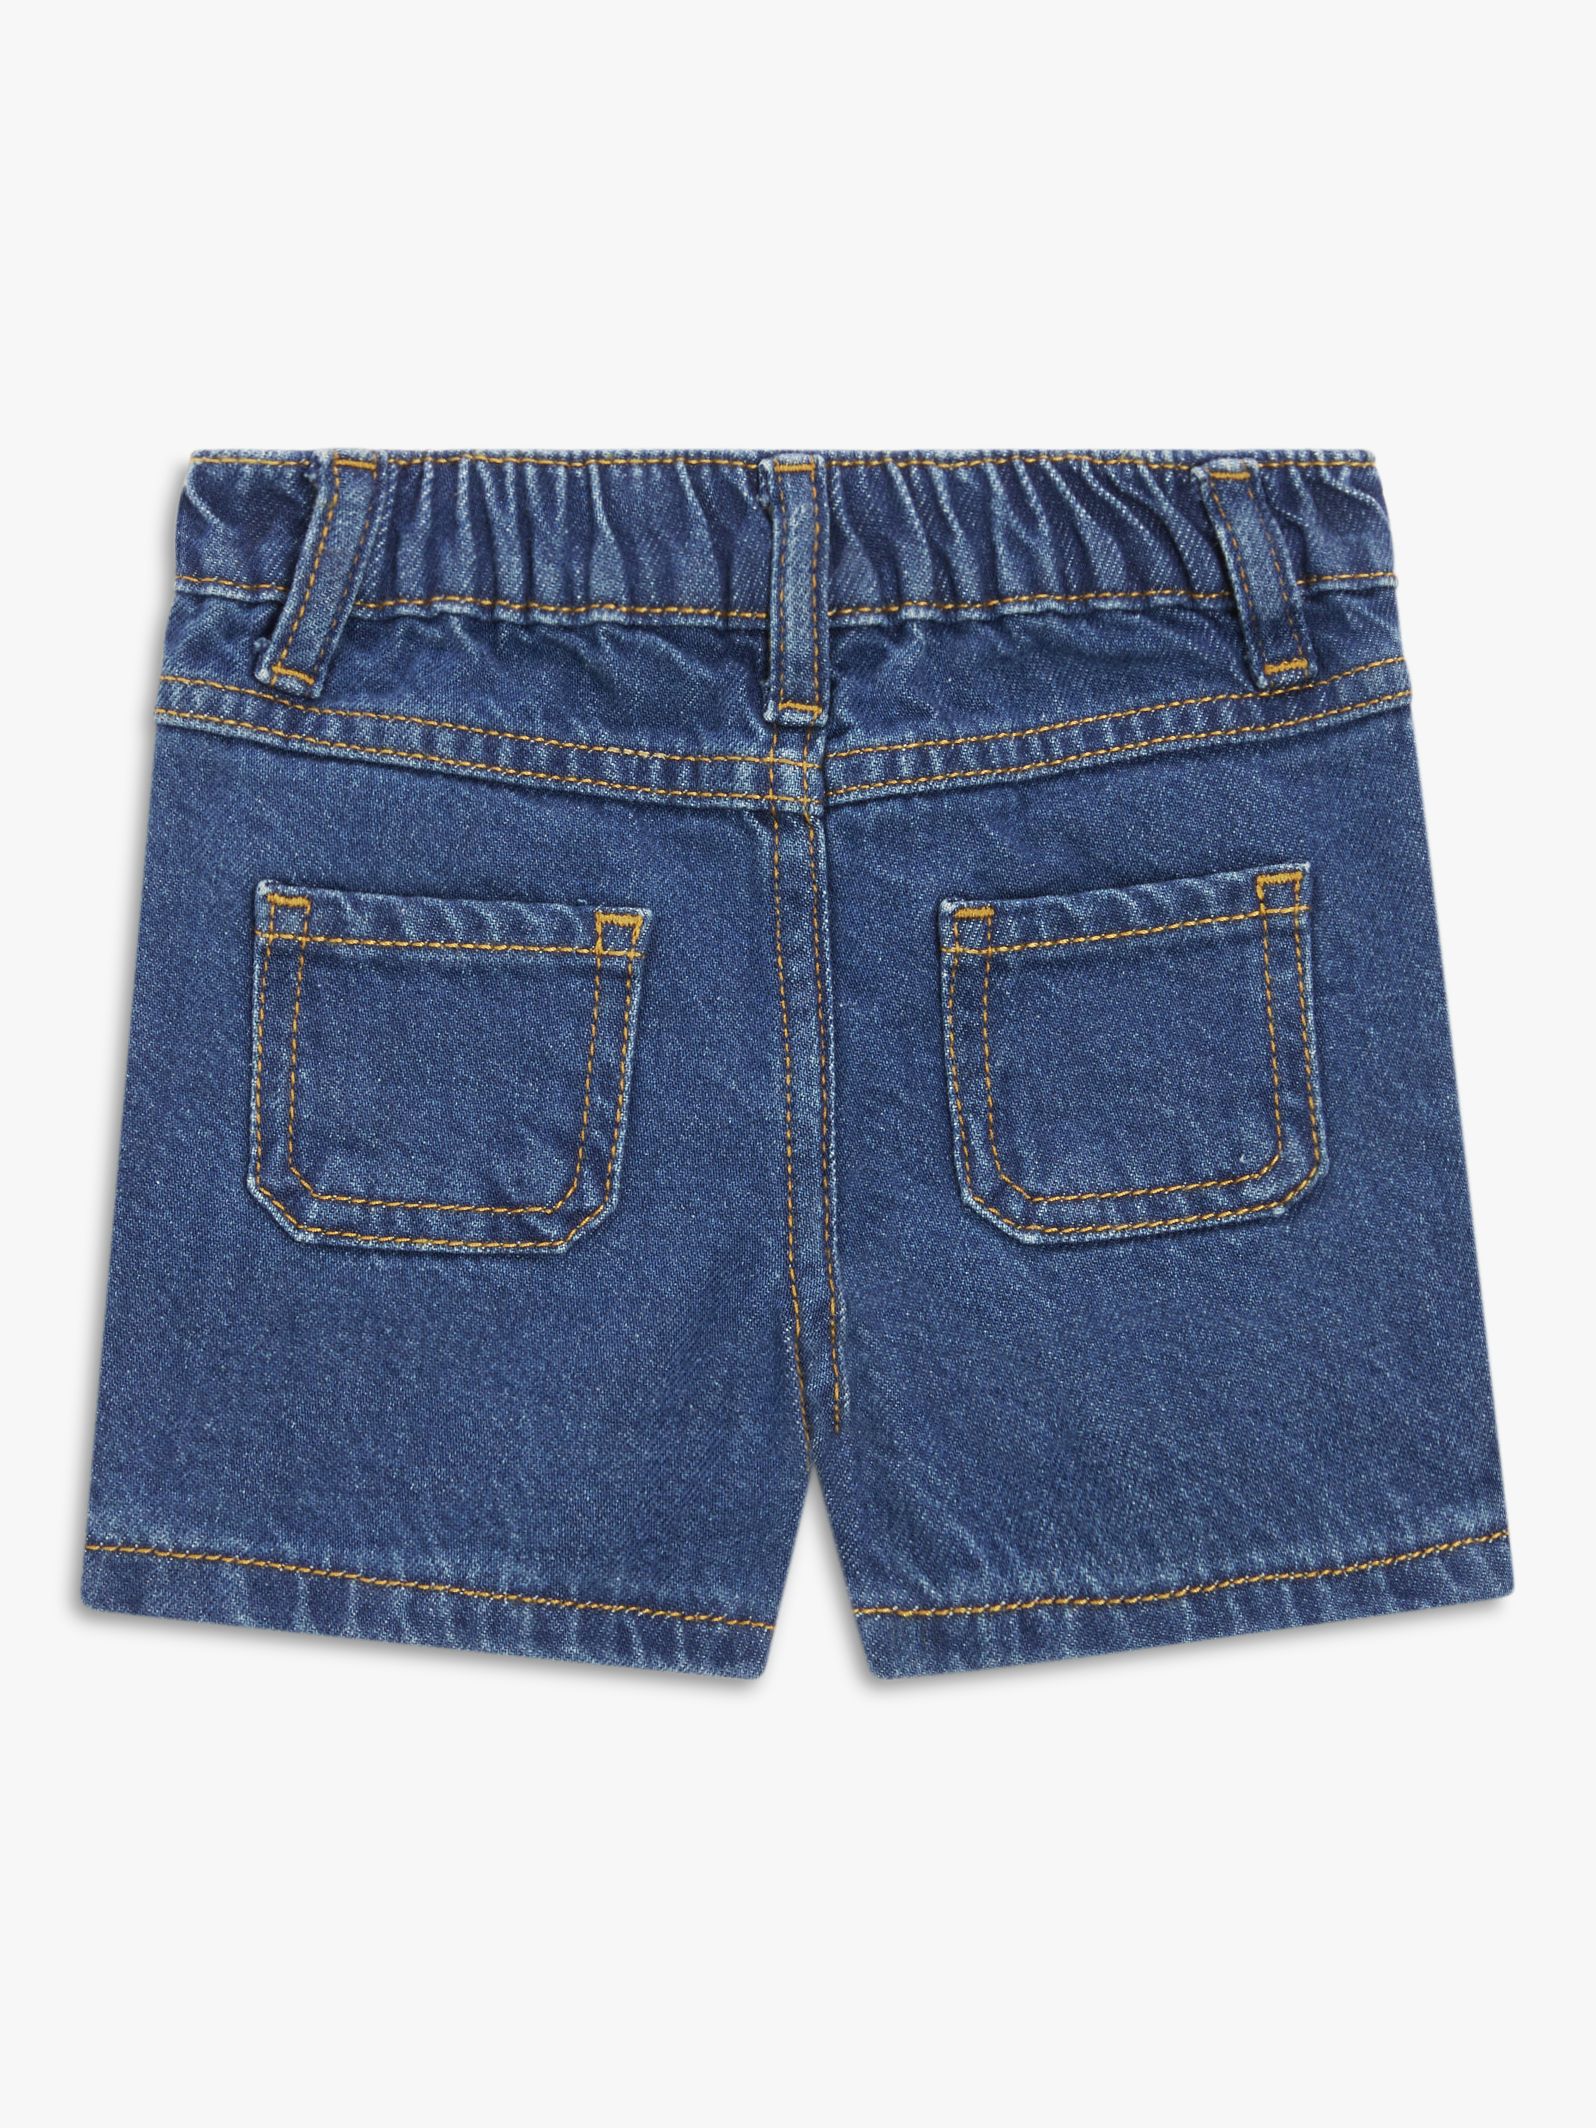 John Lewis Baby Denim Shorts, Blue, 2-3 years